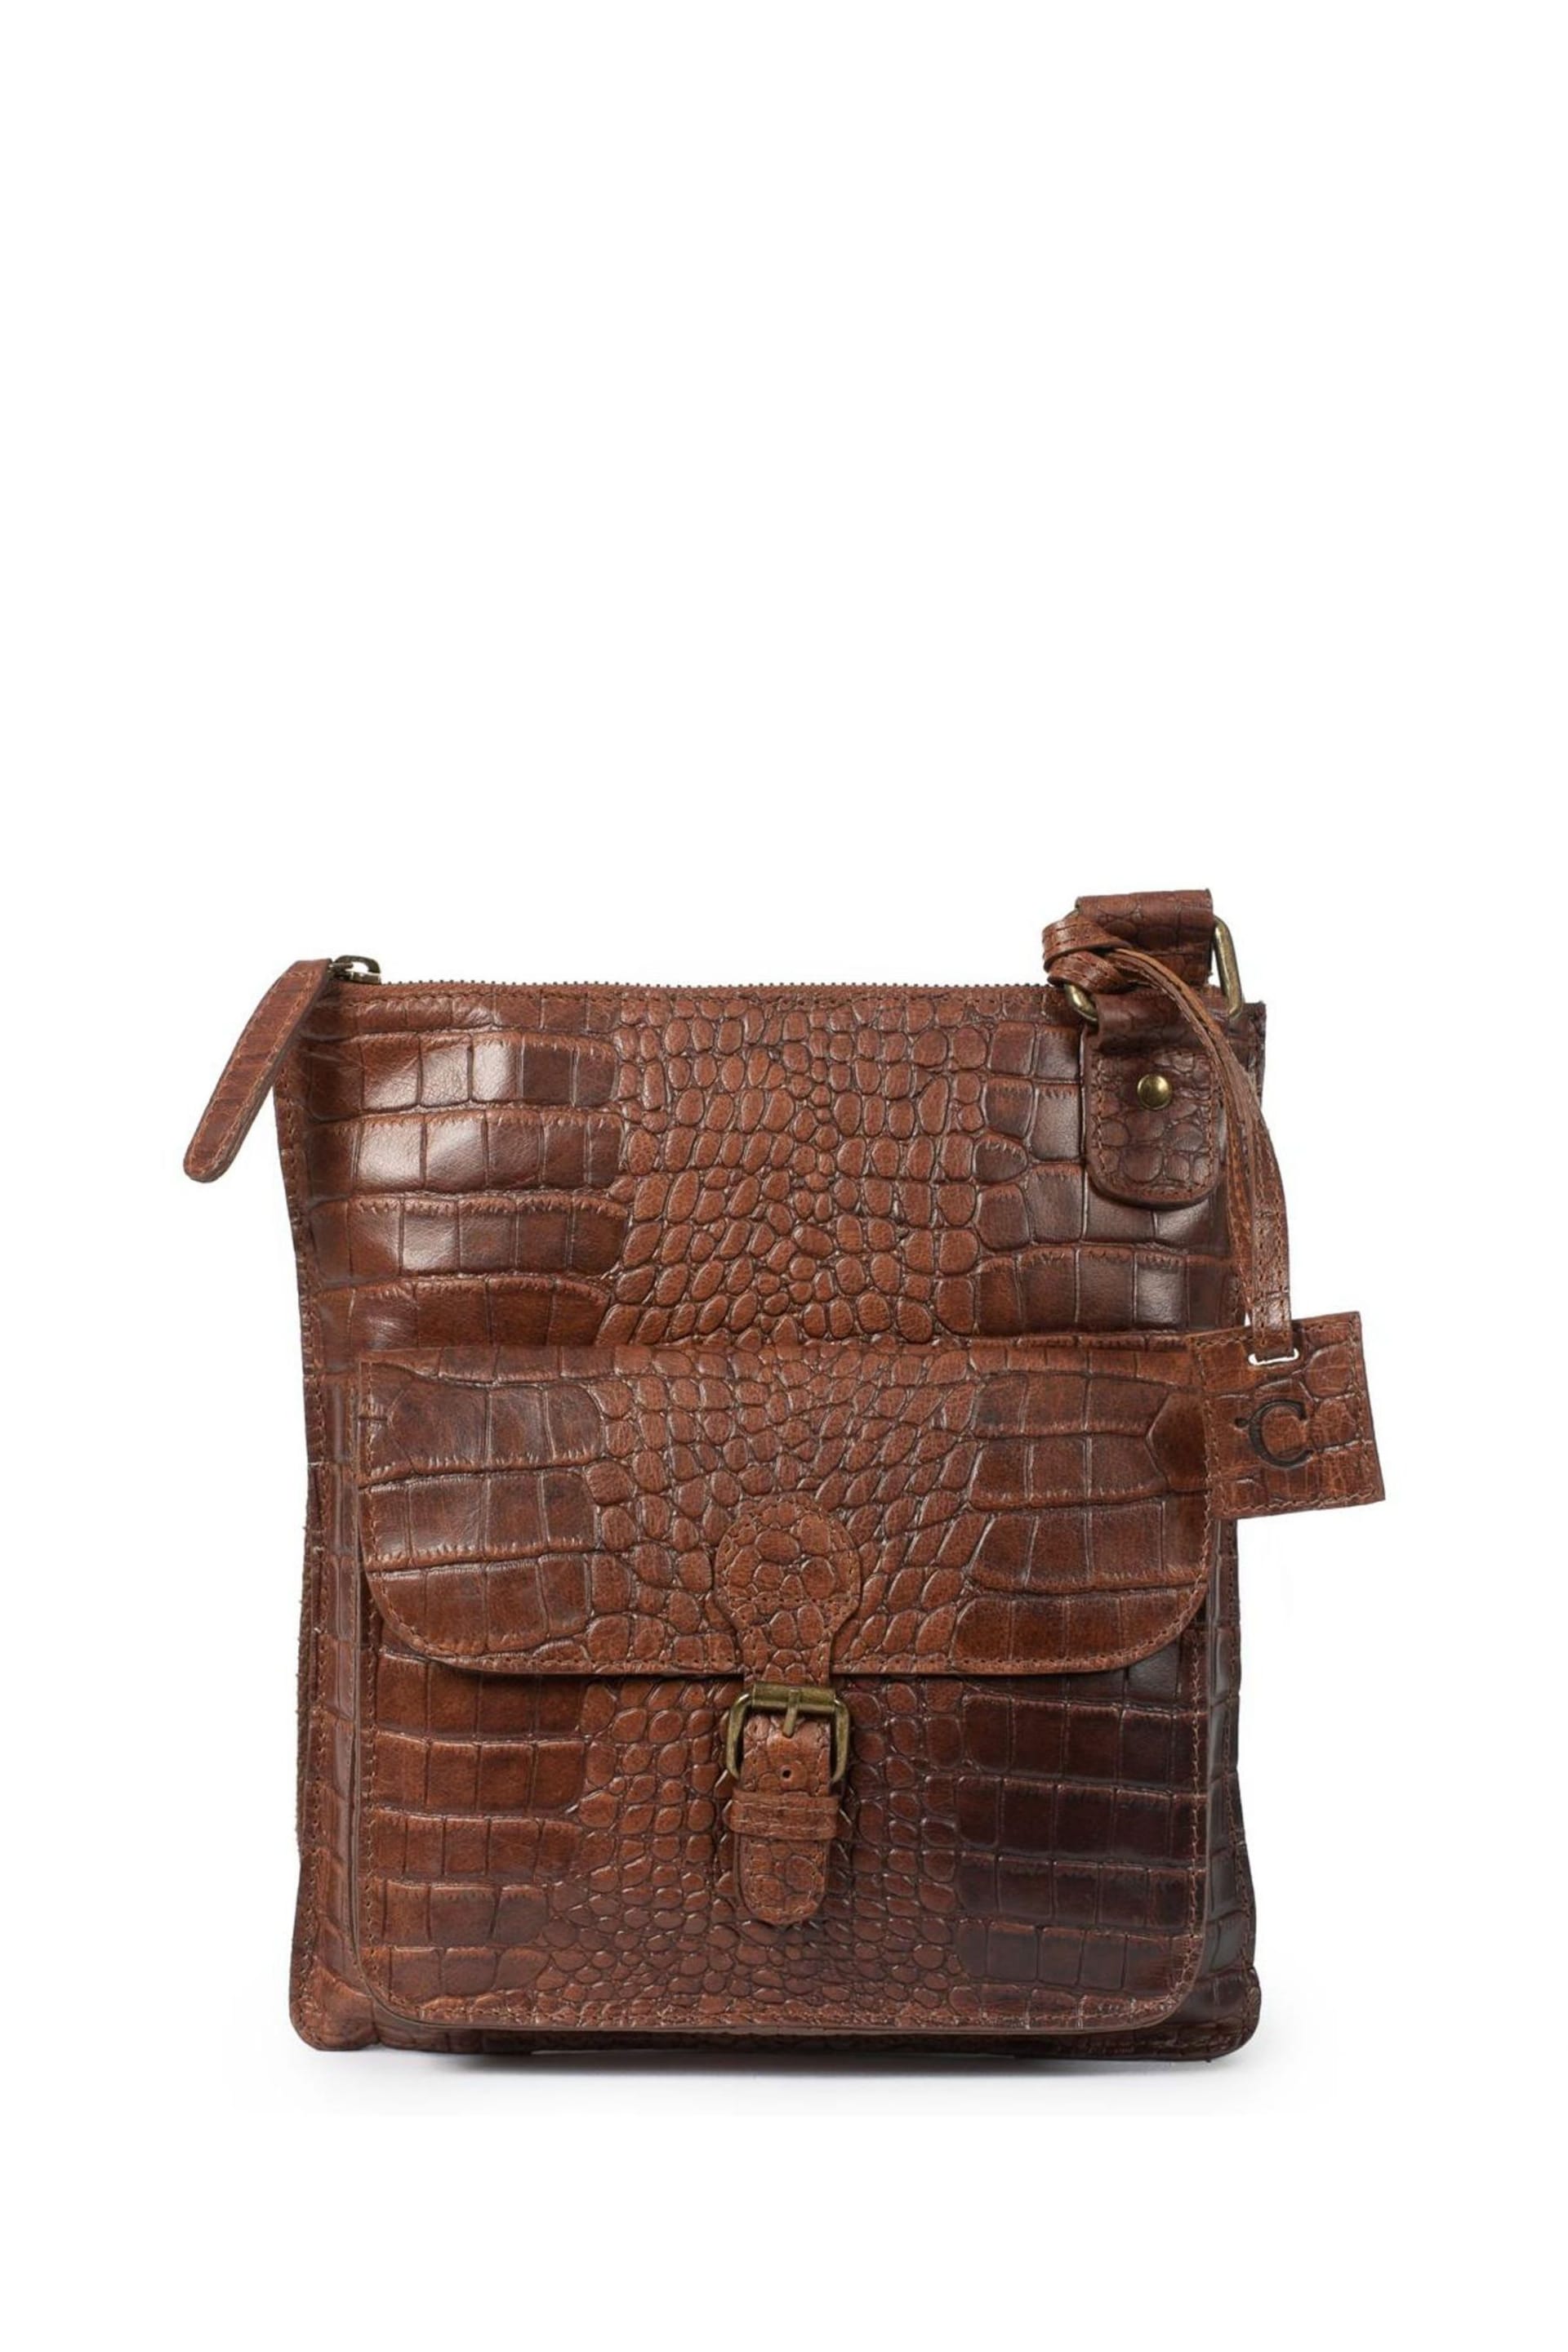 Celtic & Co. Brown Rigger Bag - Image 1 of 3